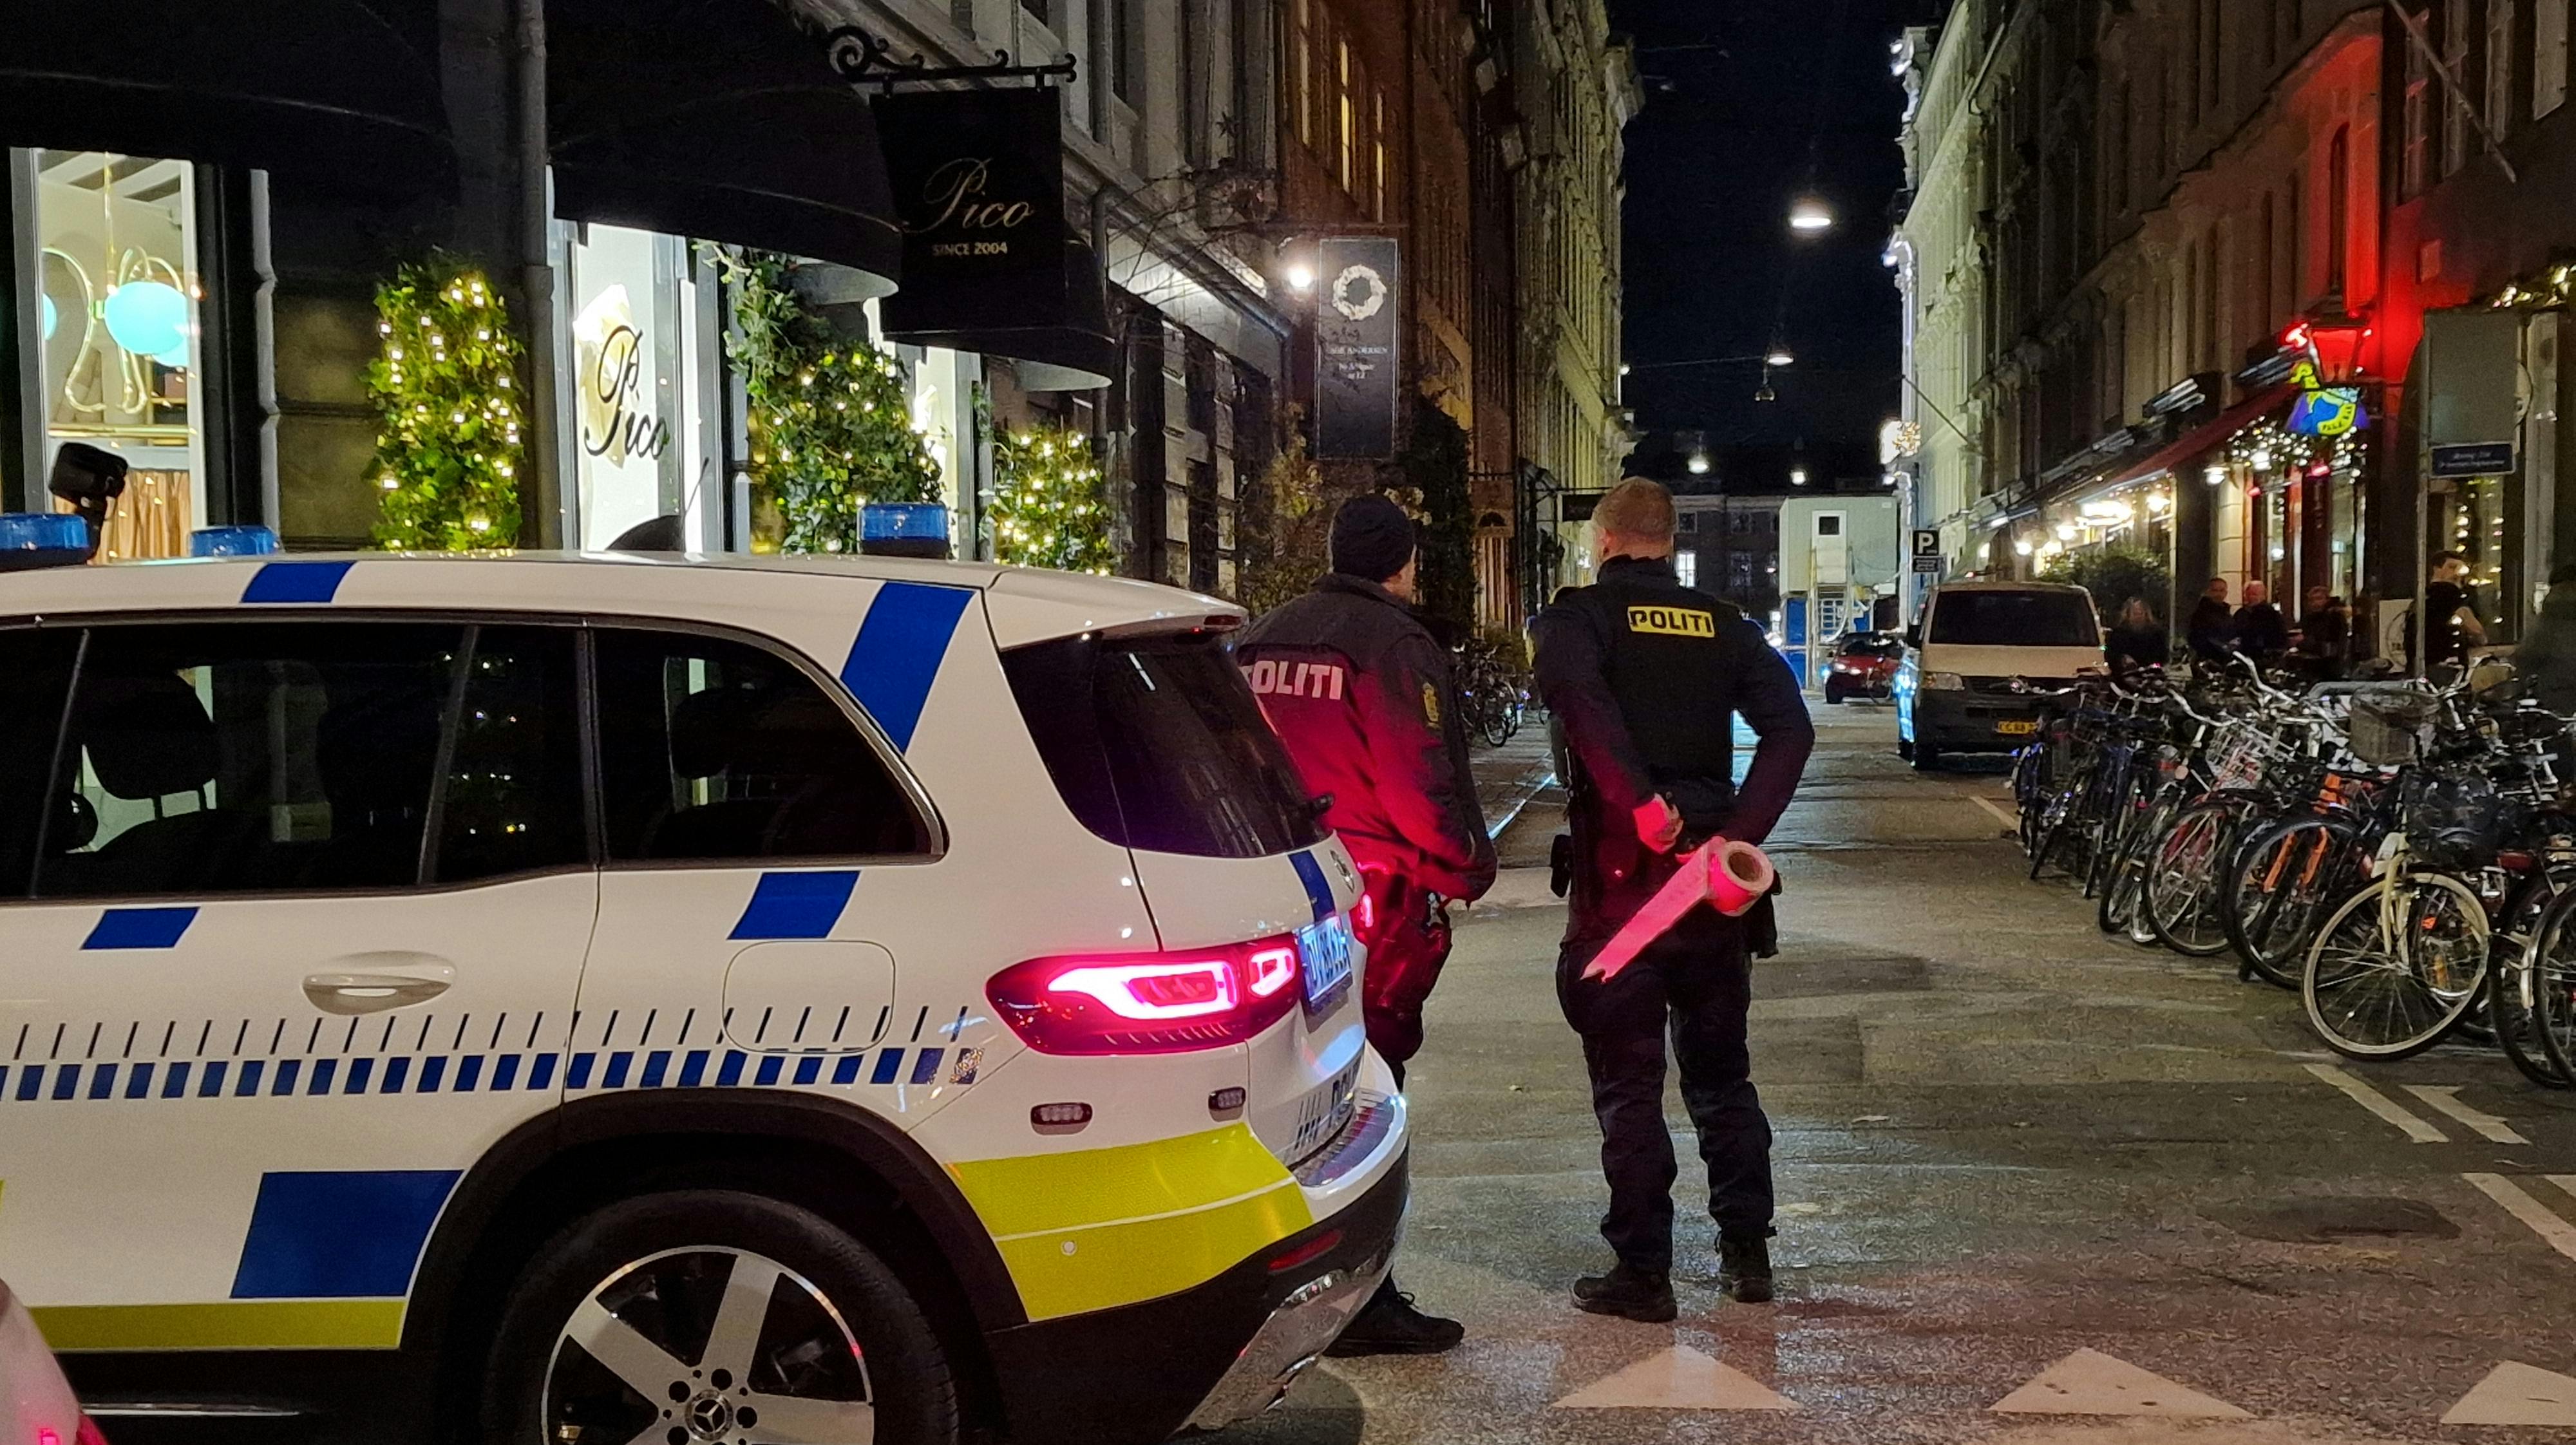 Røveriet fandt sted her på Grønnegade i København.